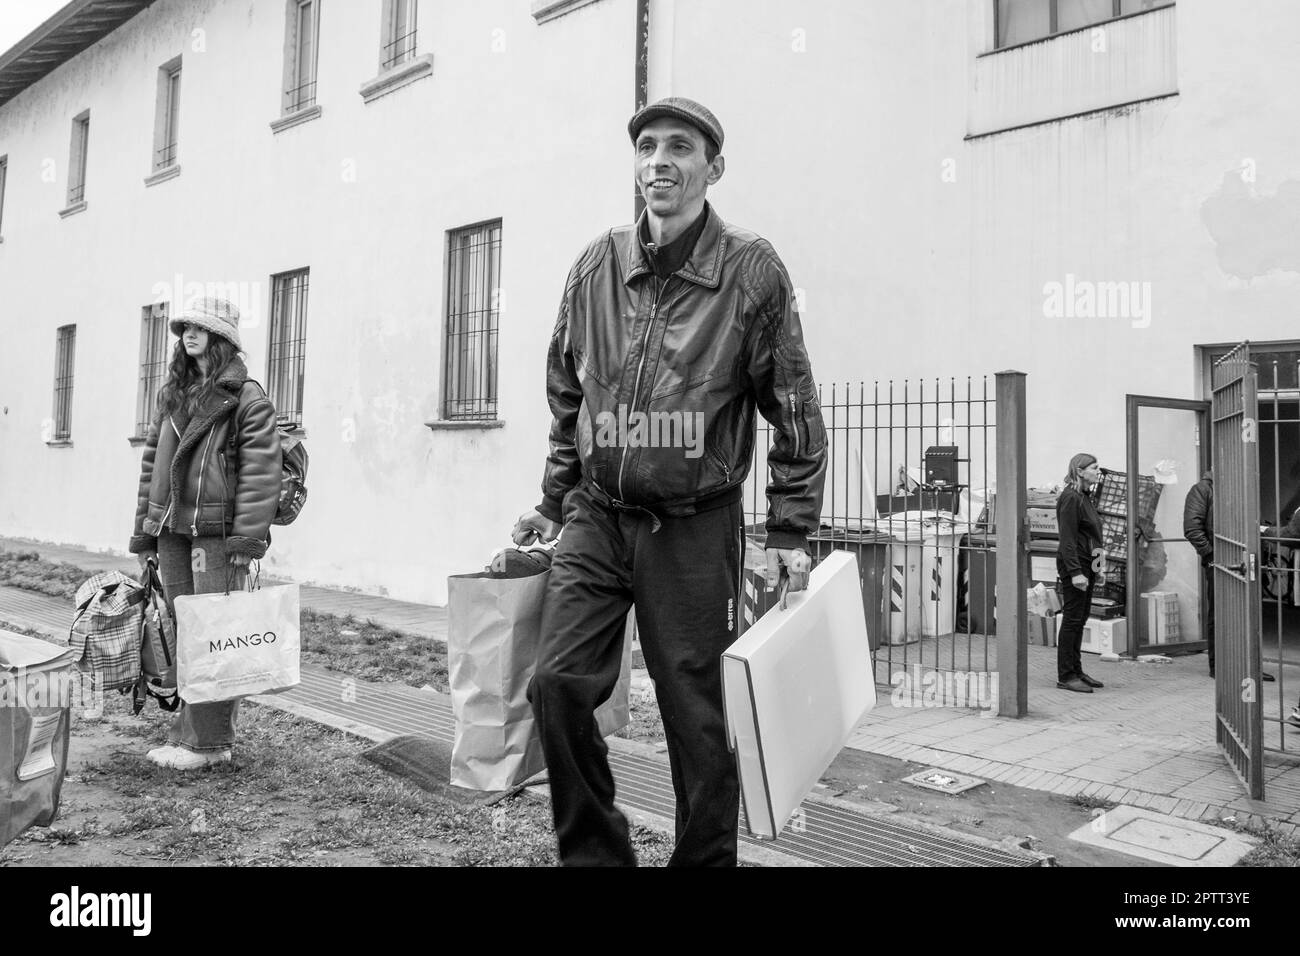 Italie, Abbiategrasso, réfugiés ukrainiens dans le centre d'accueil de l'ancien couvent de l'Annunciata Banque D'Images